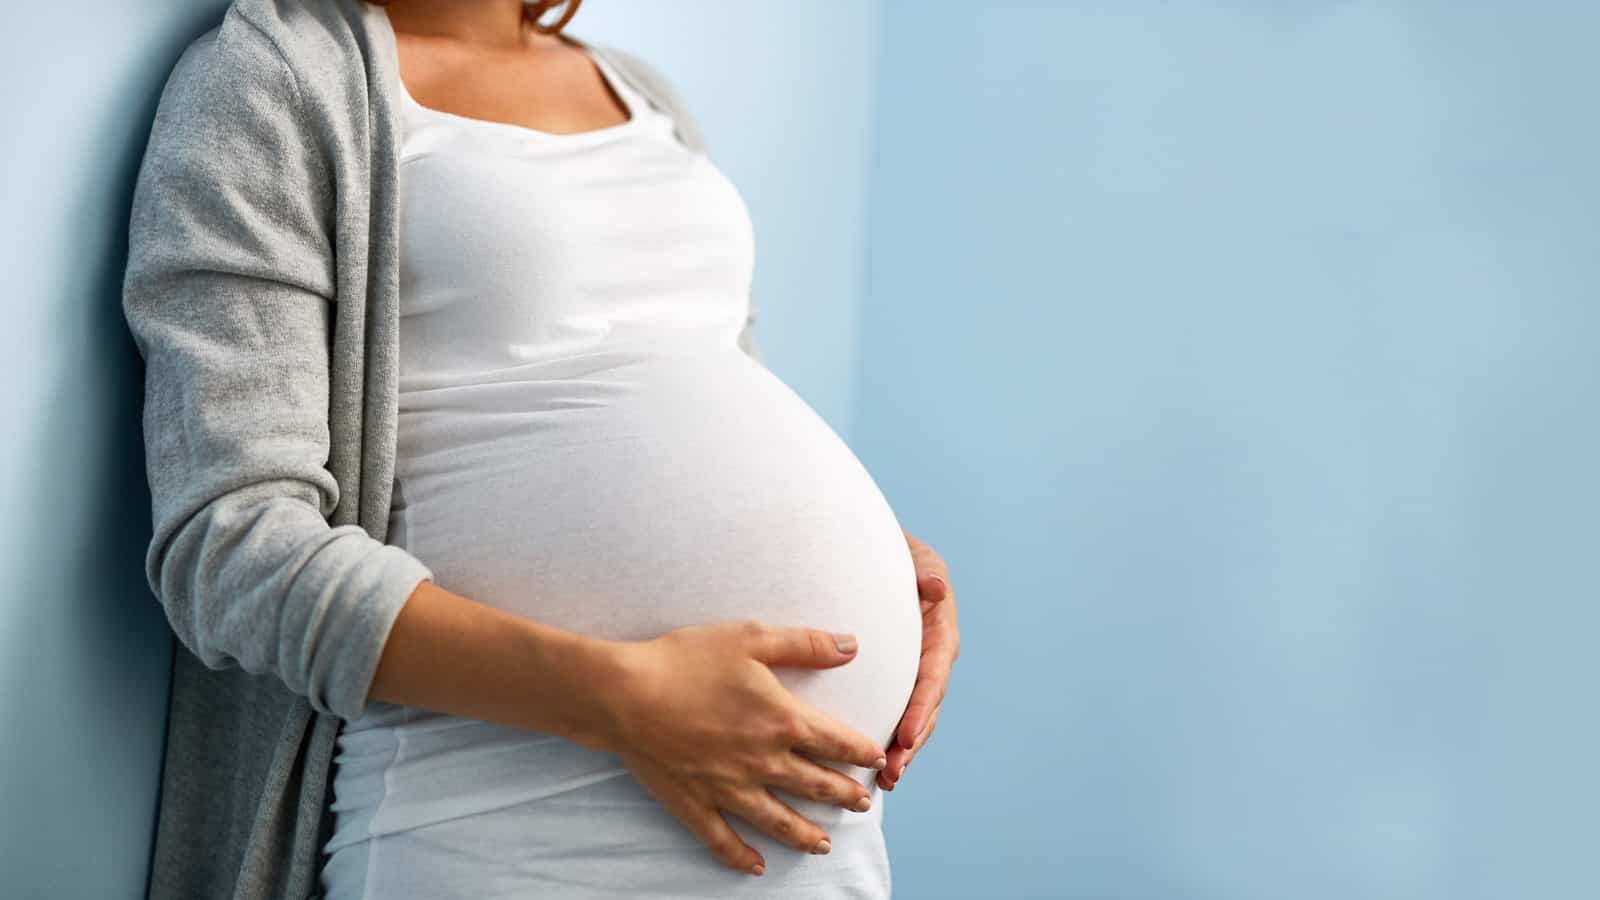 أسباب الحكة عند الحامل وما أعراضها